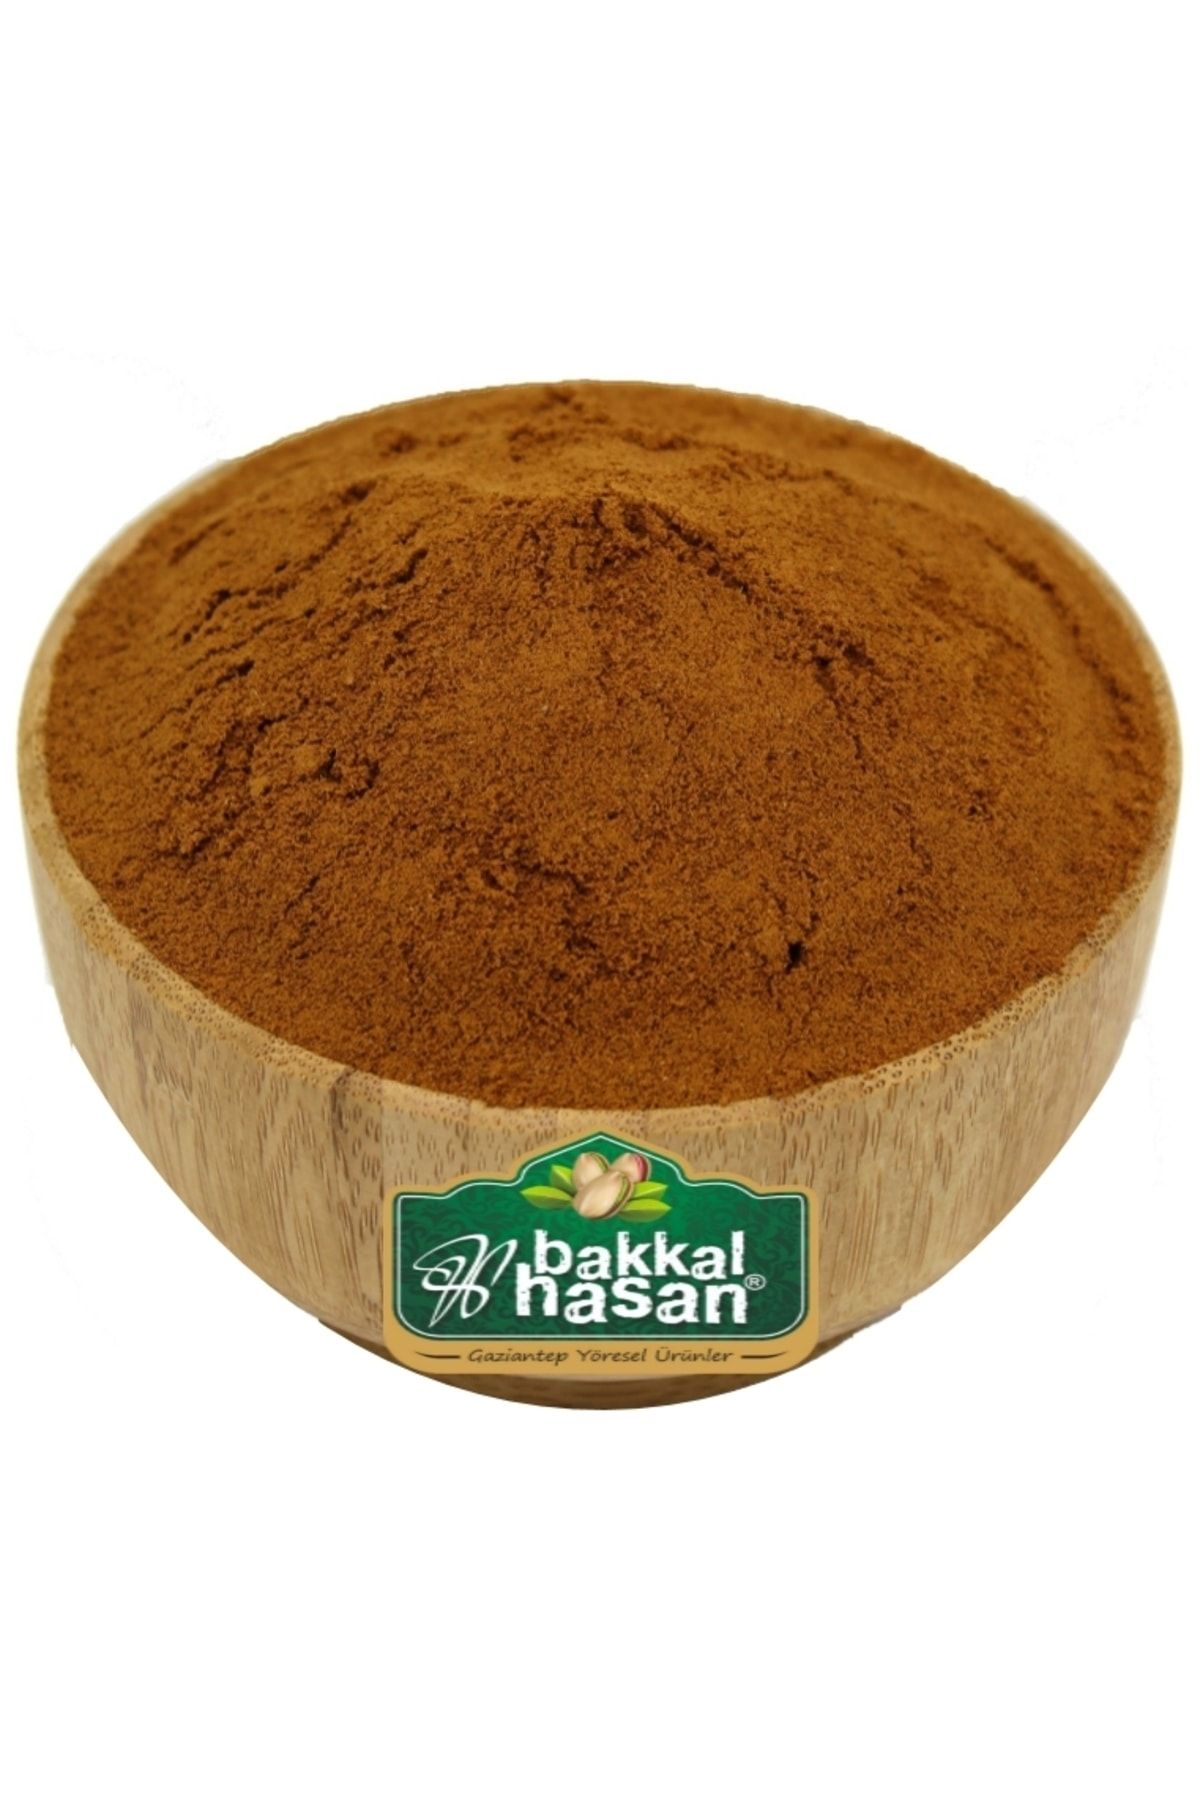 bakkal hasan Damla Sakızlı Toz Kahve 100 gr - Bakkal Hasan